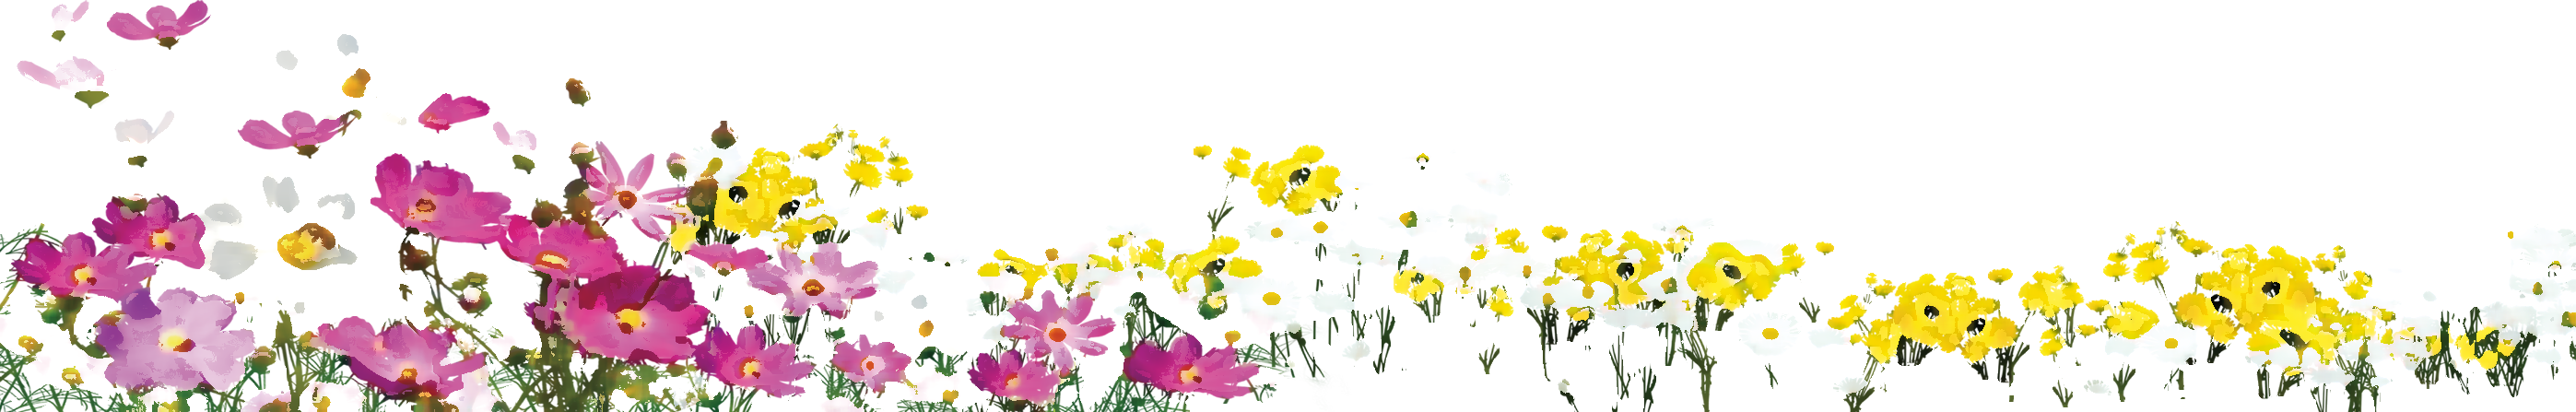 リアルタッチな花のイラスト フリー素材 No 1063 花畑 カラフル